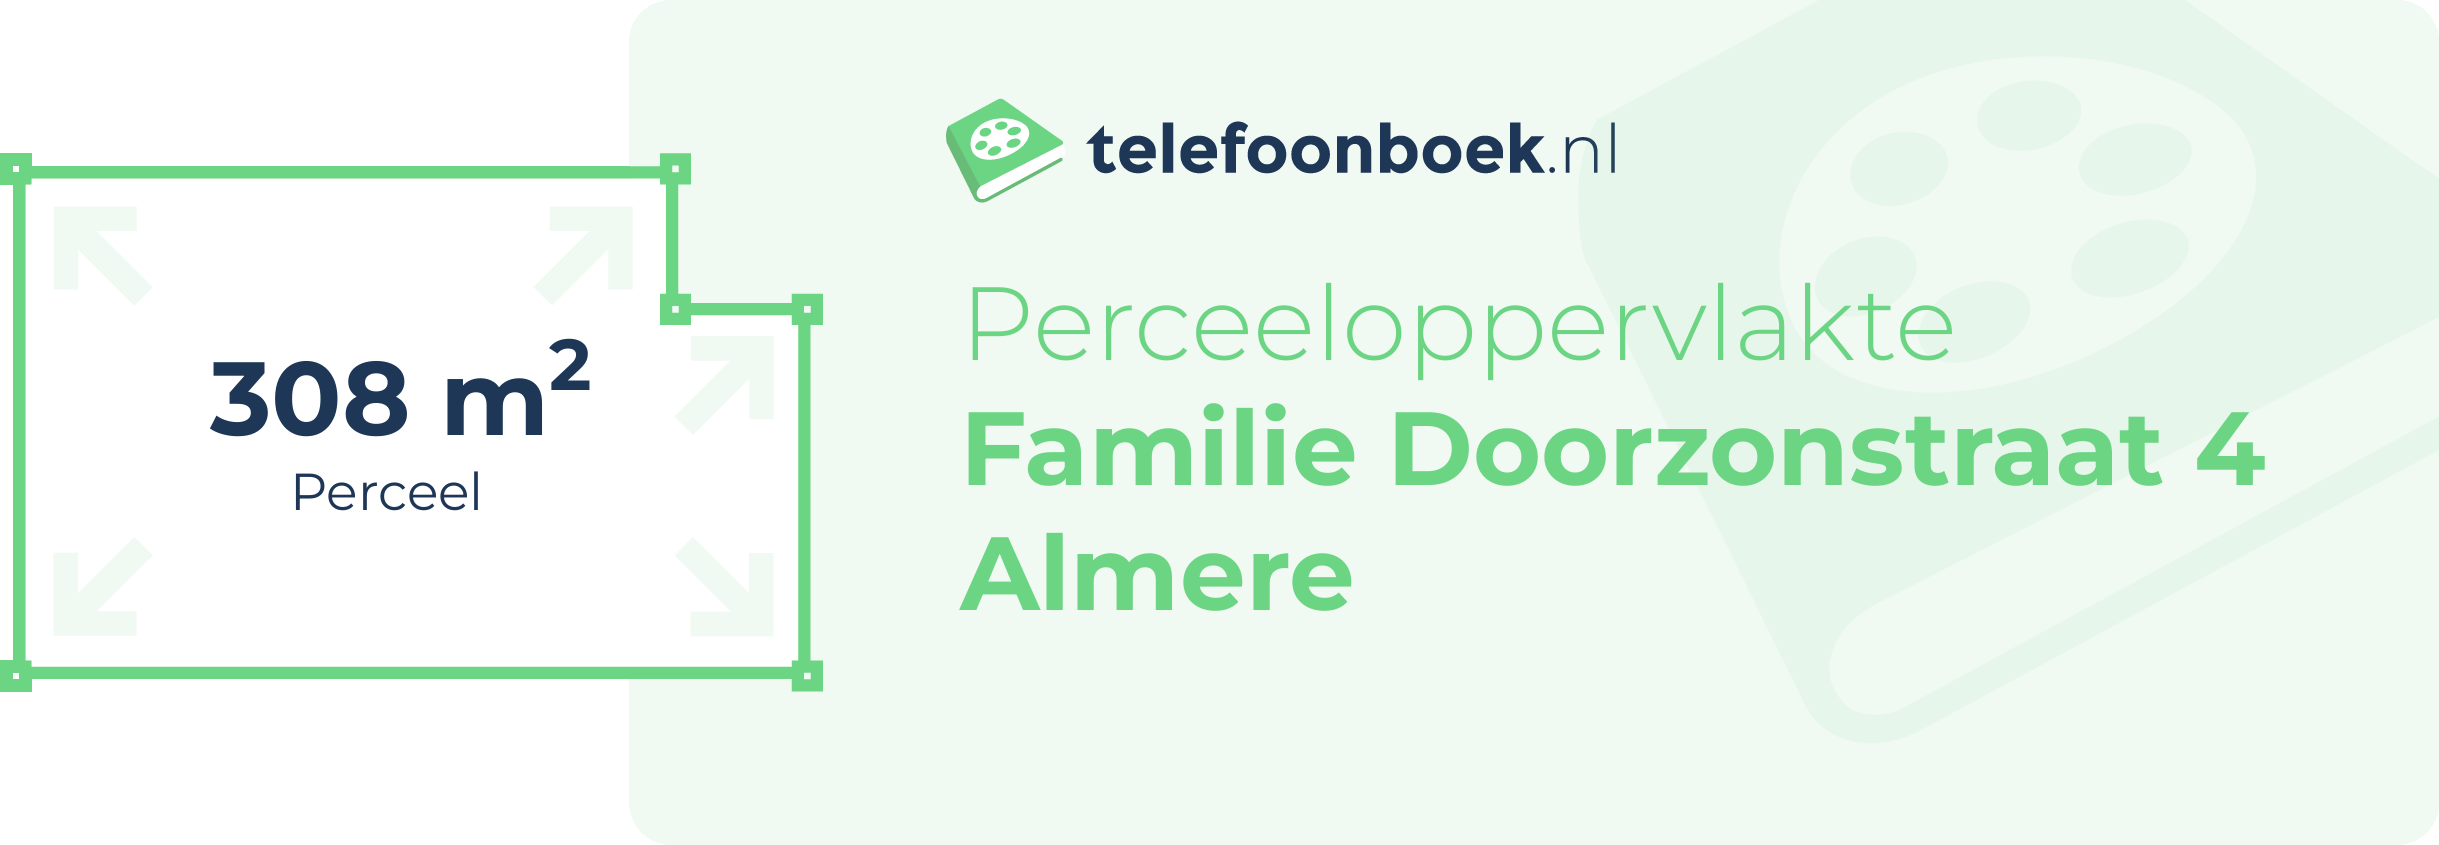 Perceeloppervlakte Familie Doorzonstraat 4 Almere